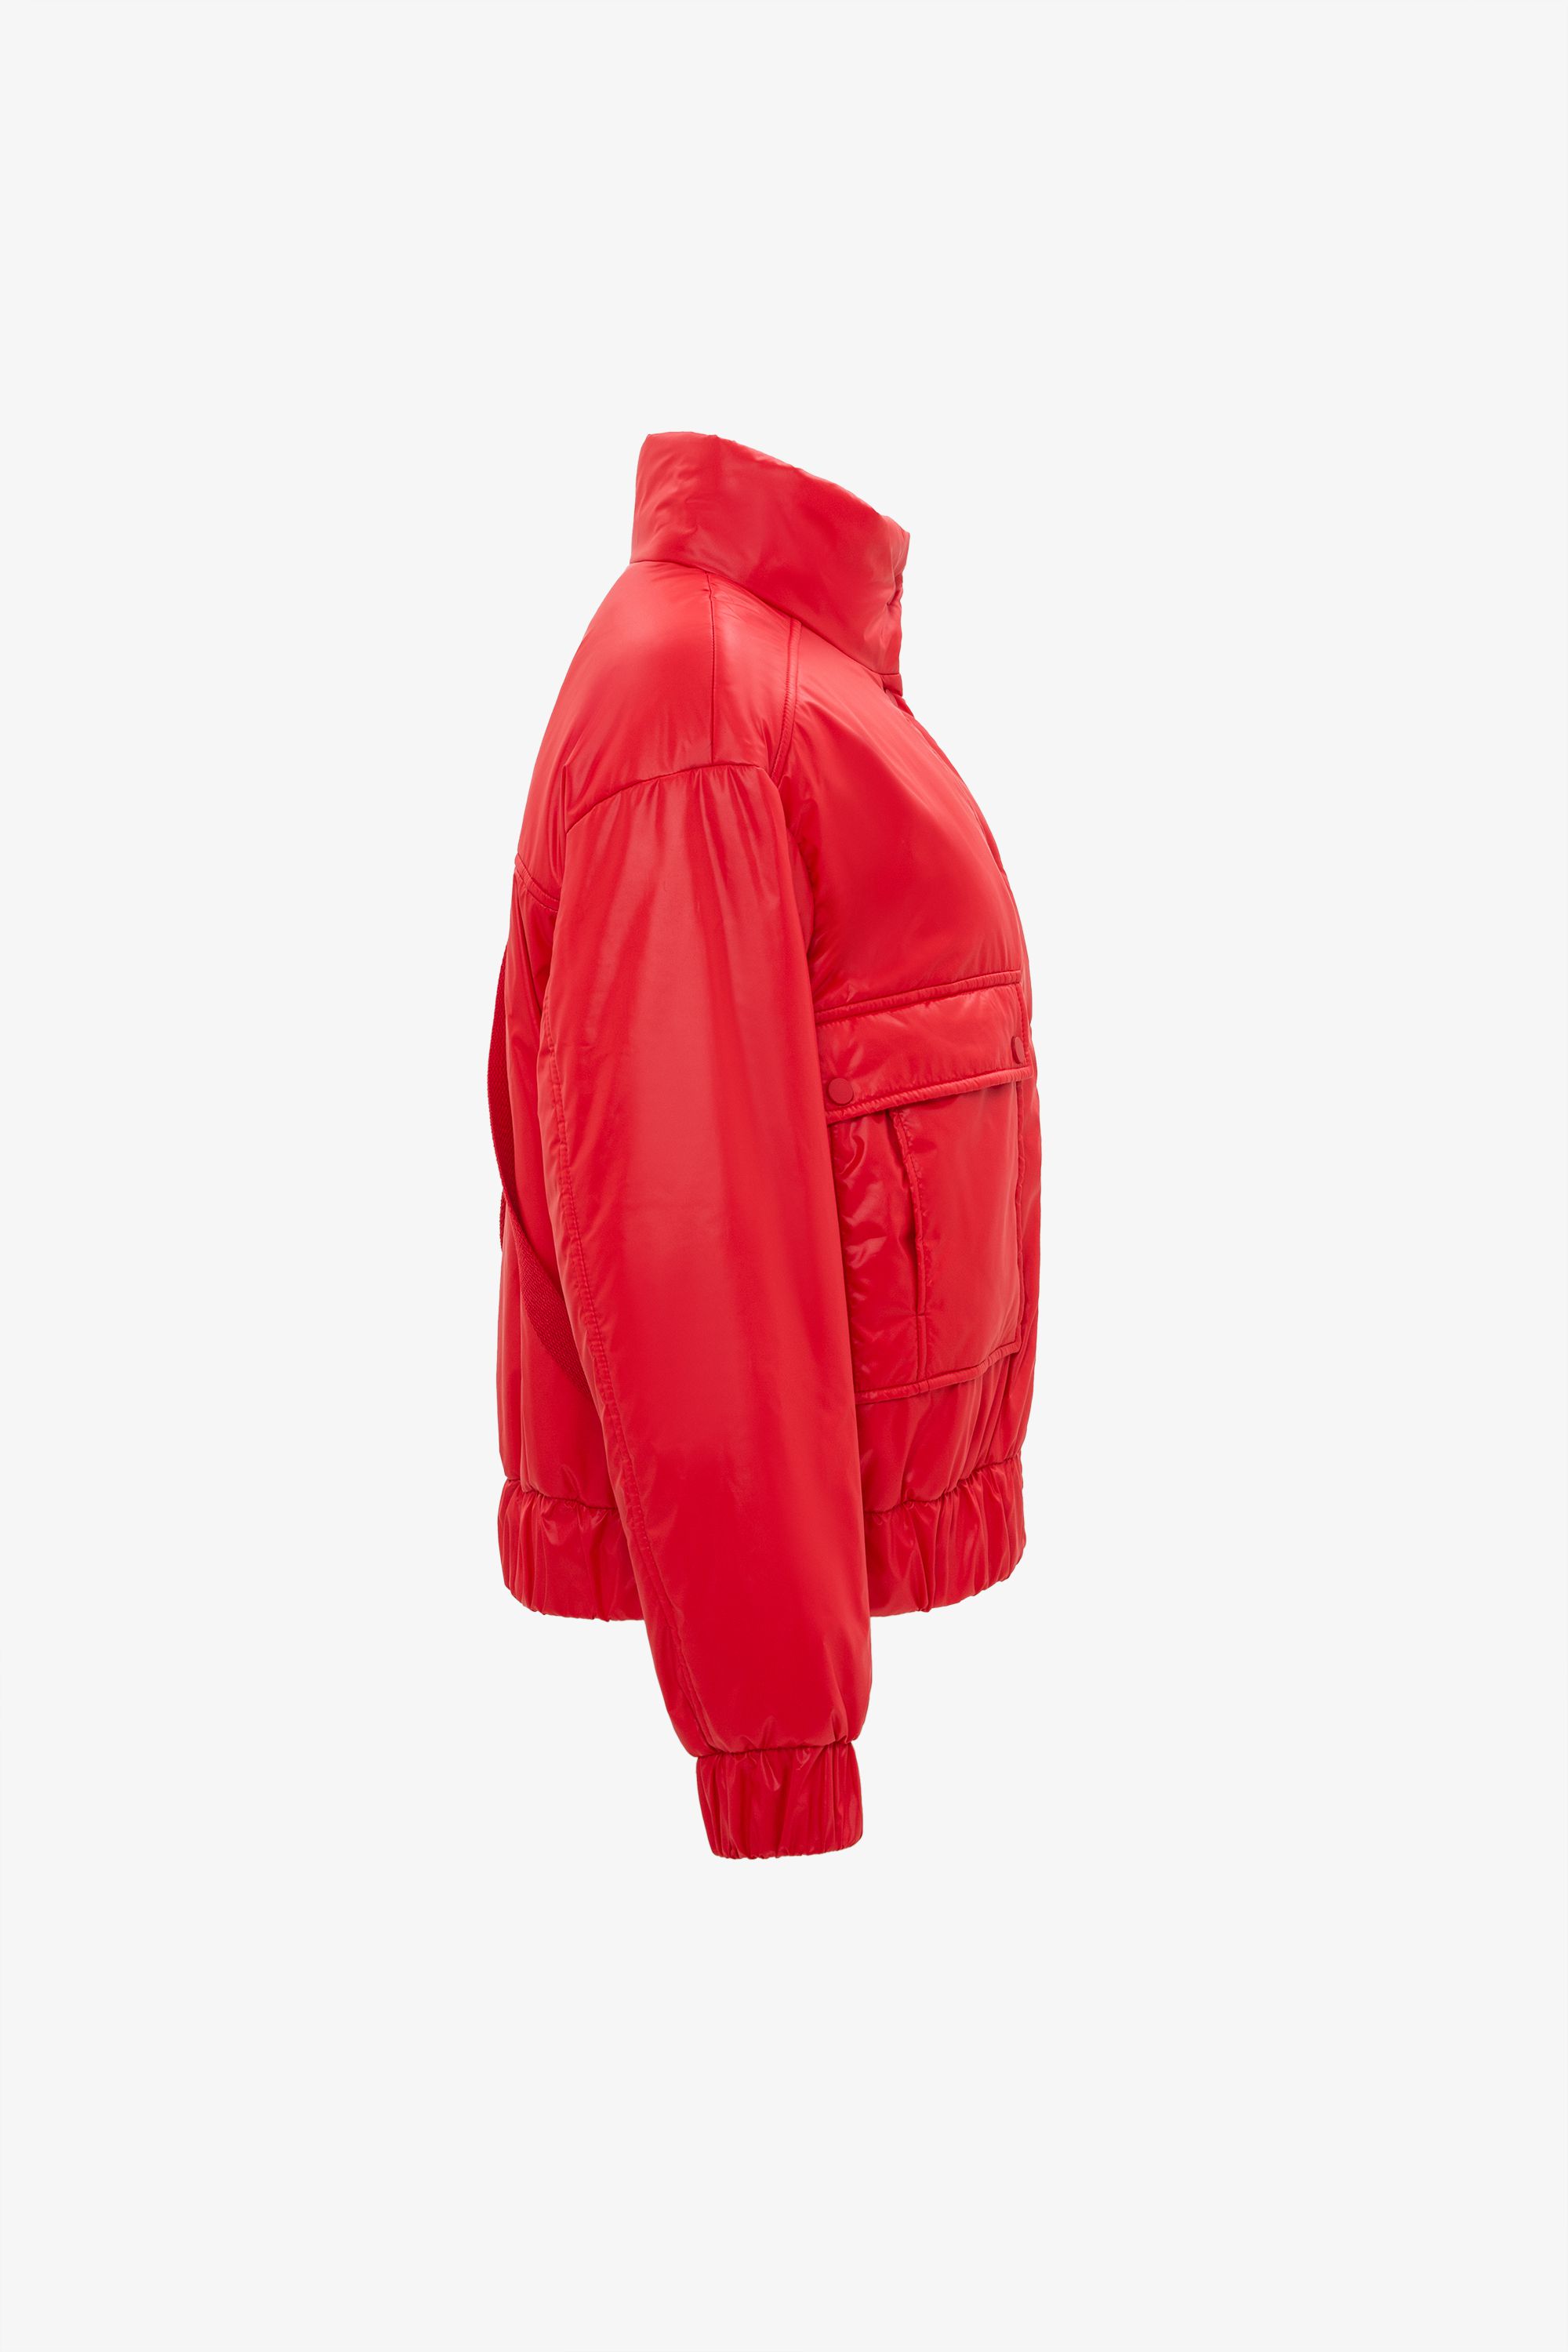 Куртка женская плащевая утепленная 4-11671-1